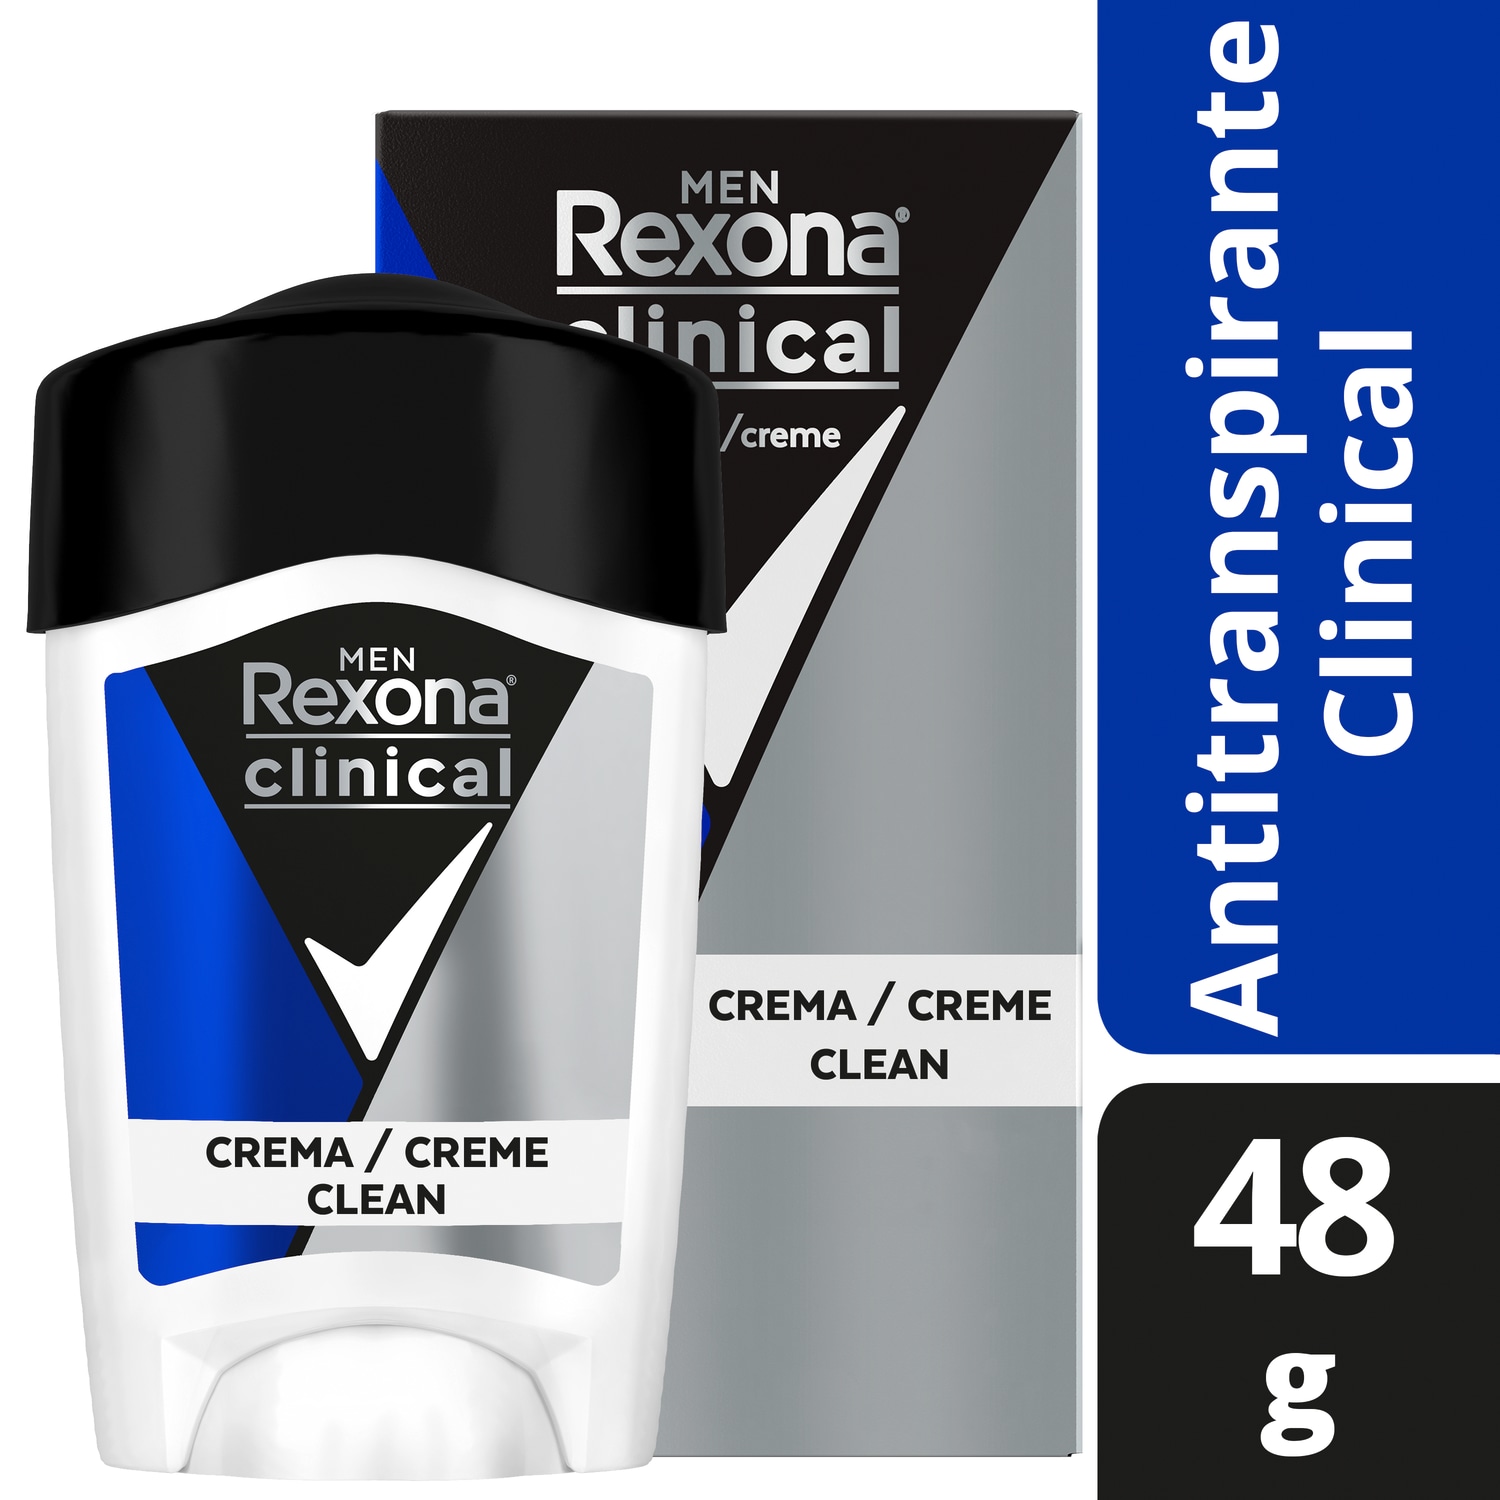 Rexona Clinical Antitranspirante en Crema Clean
